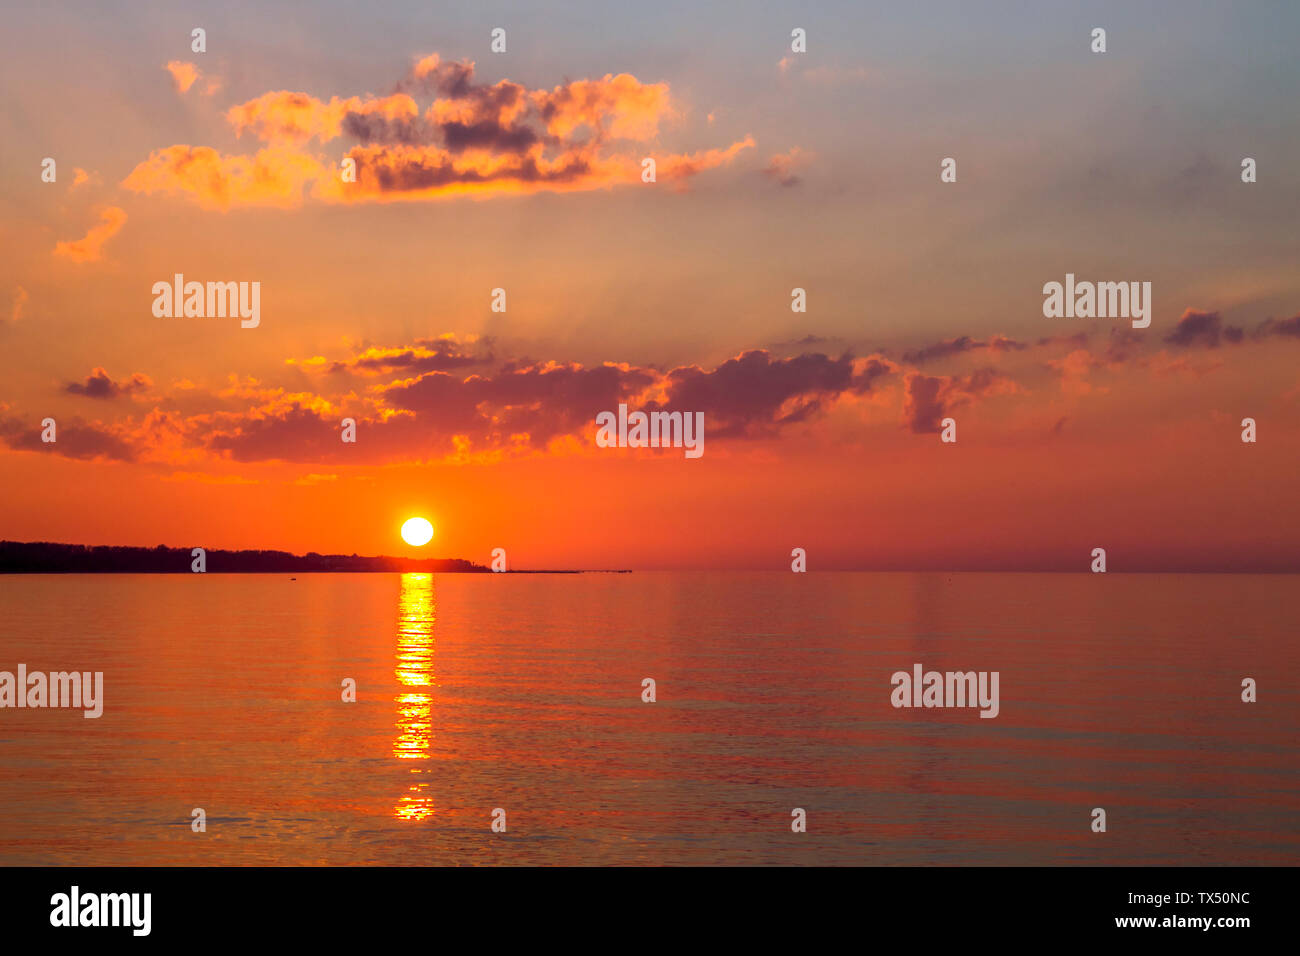 Allemagne, Heiligendamm, Bad Doberan, coucher de soleil au-dessus de la mer Baltique Banque D'Images